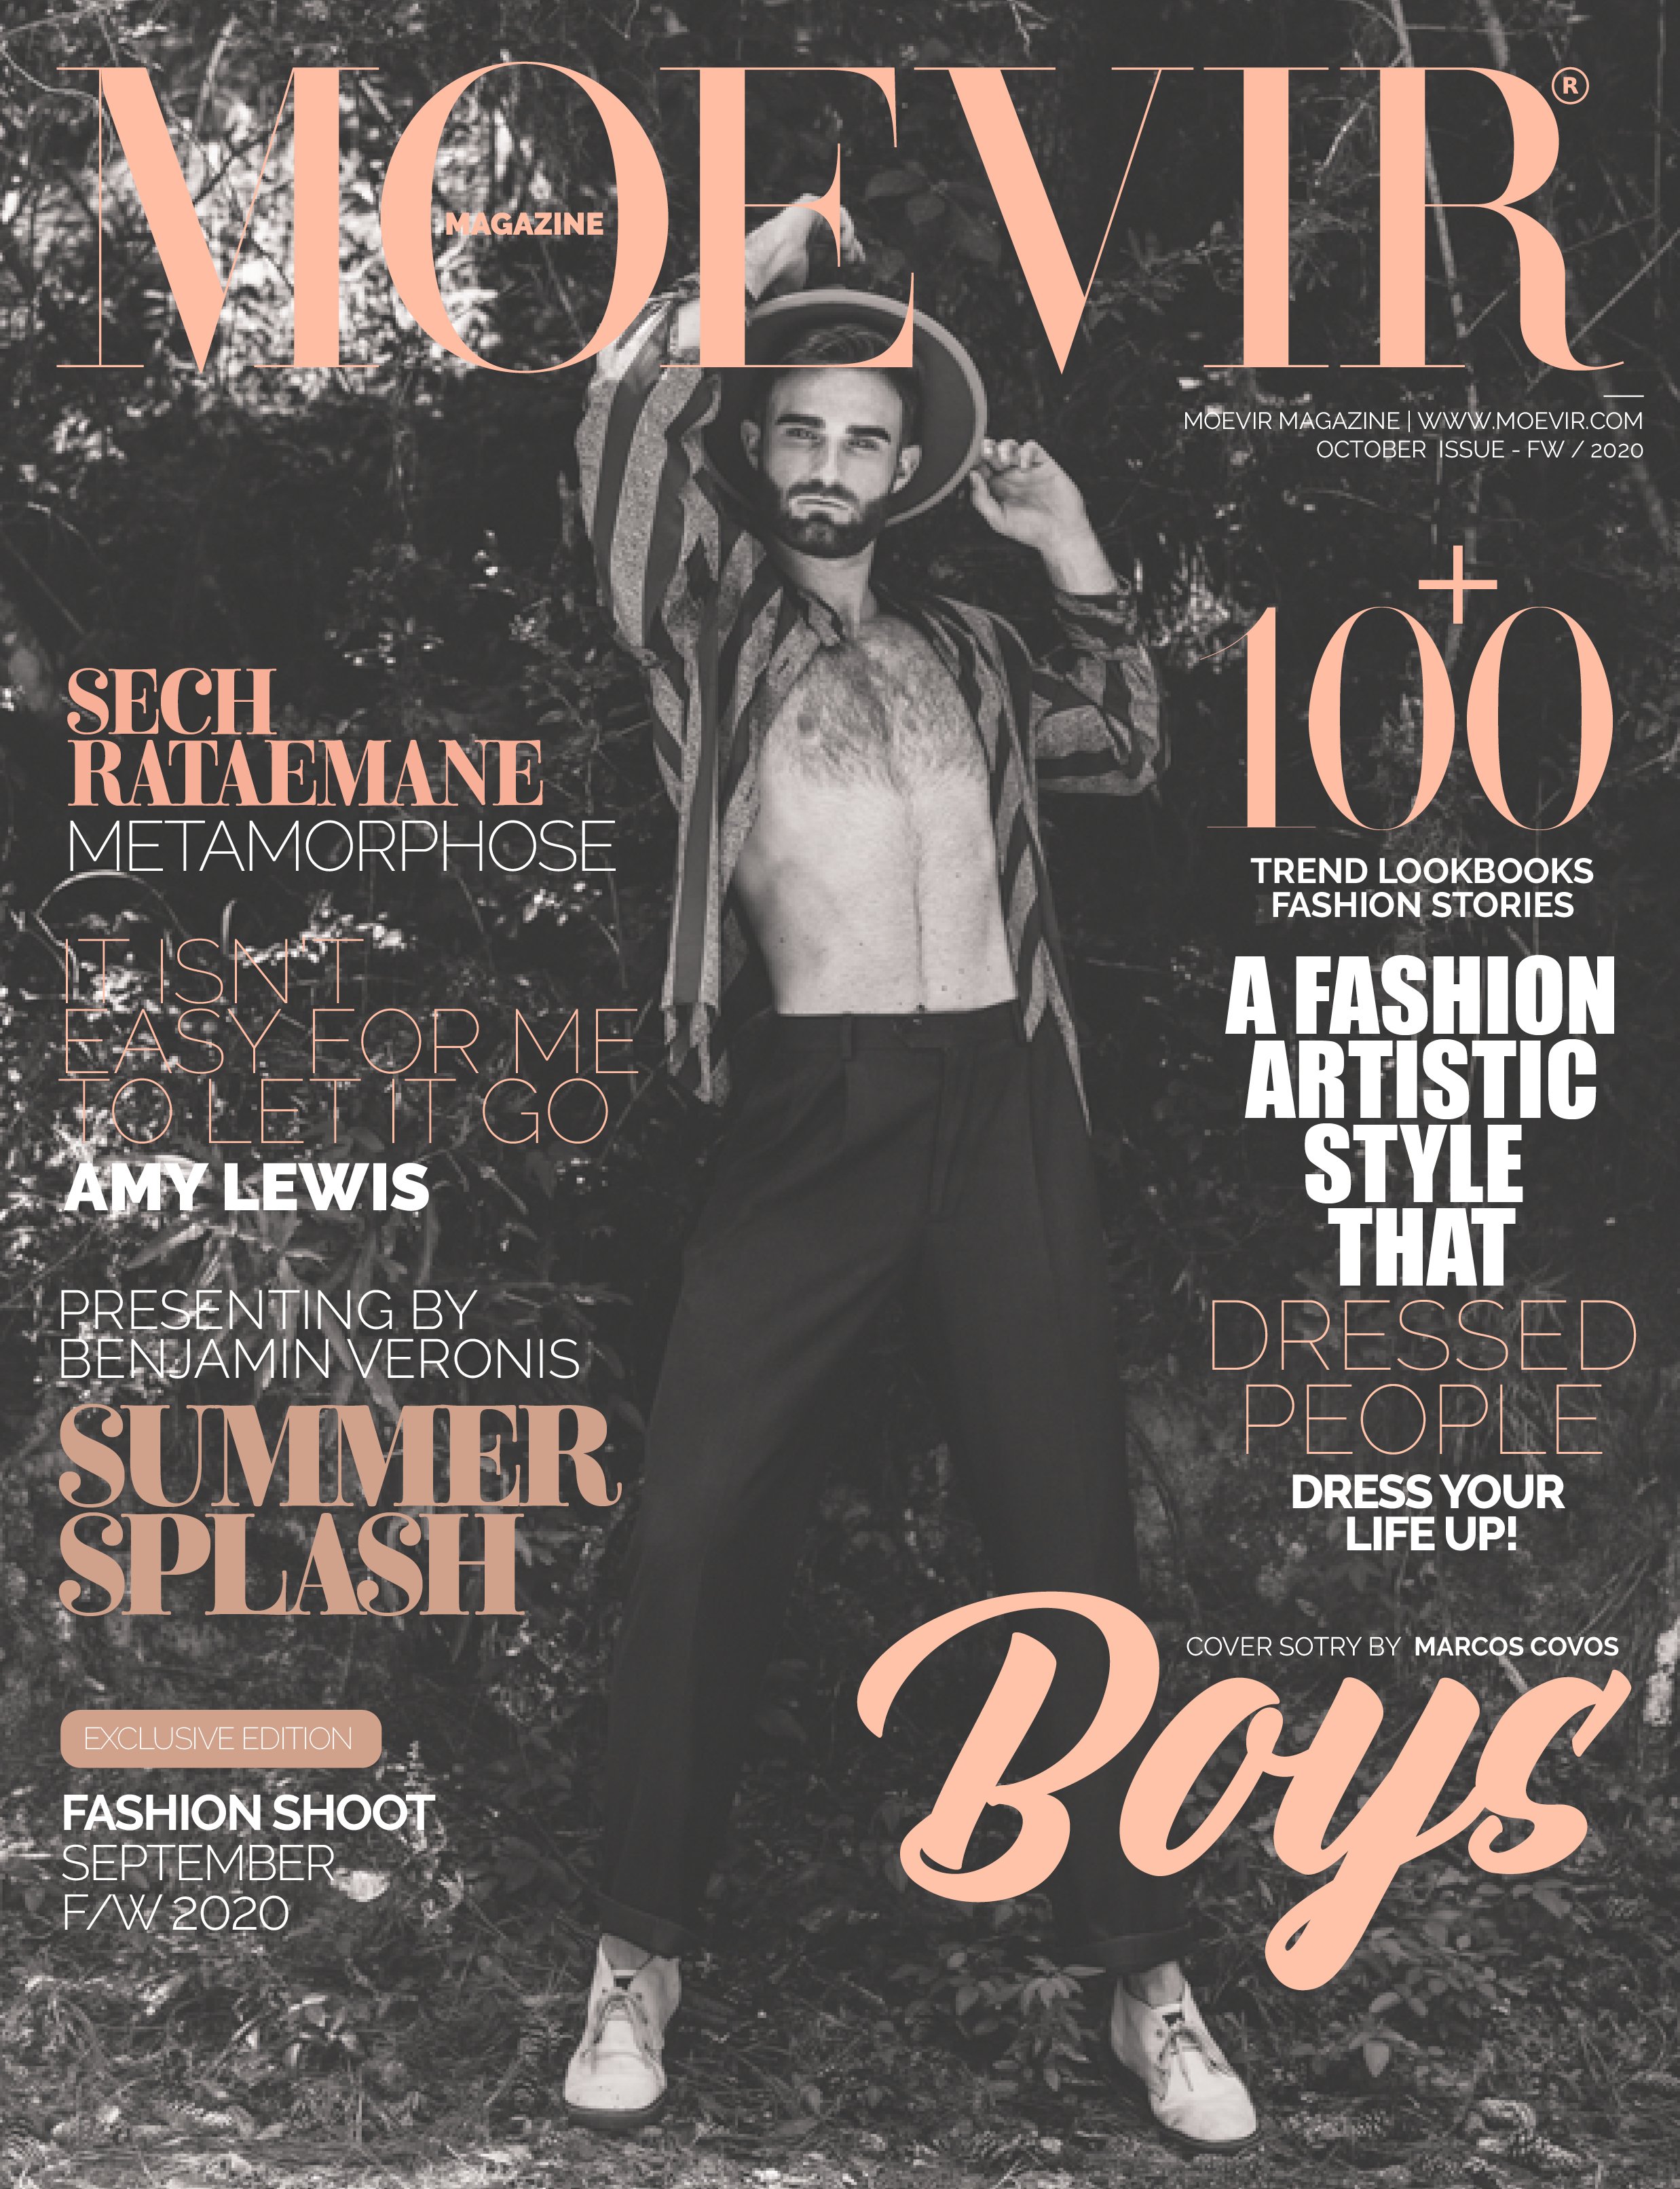 Moevir Magazine October Issue 2020.jpg